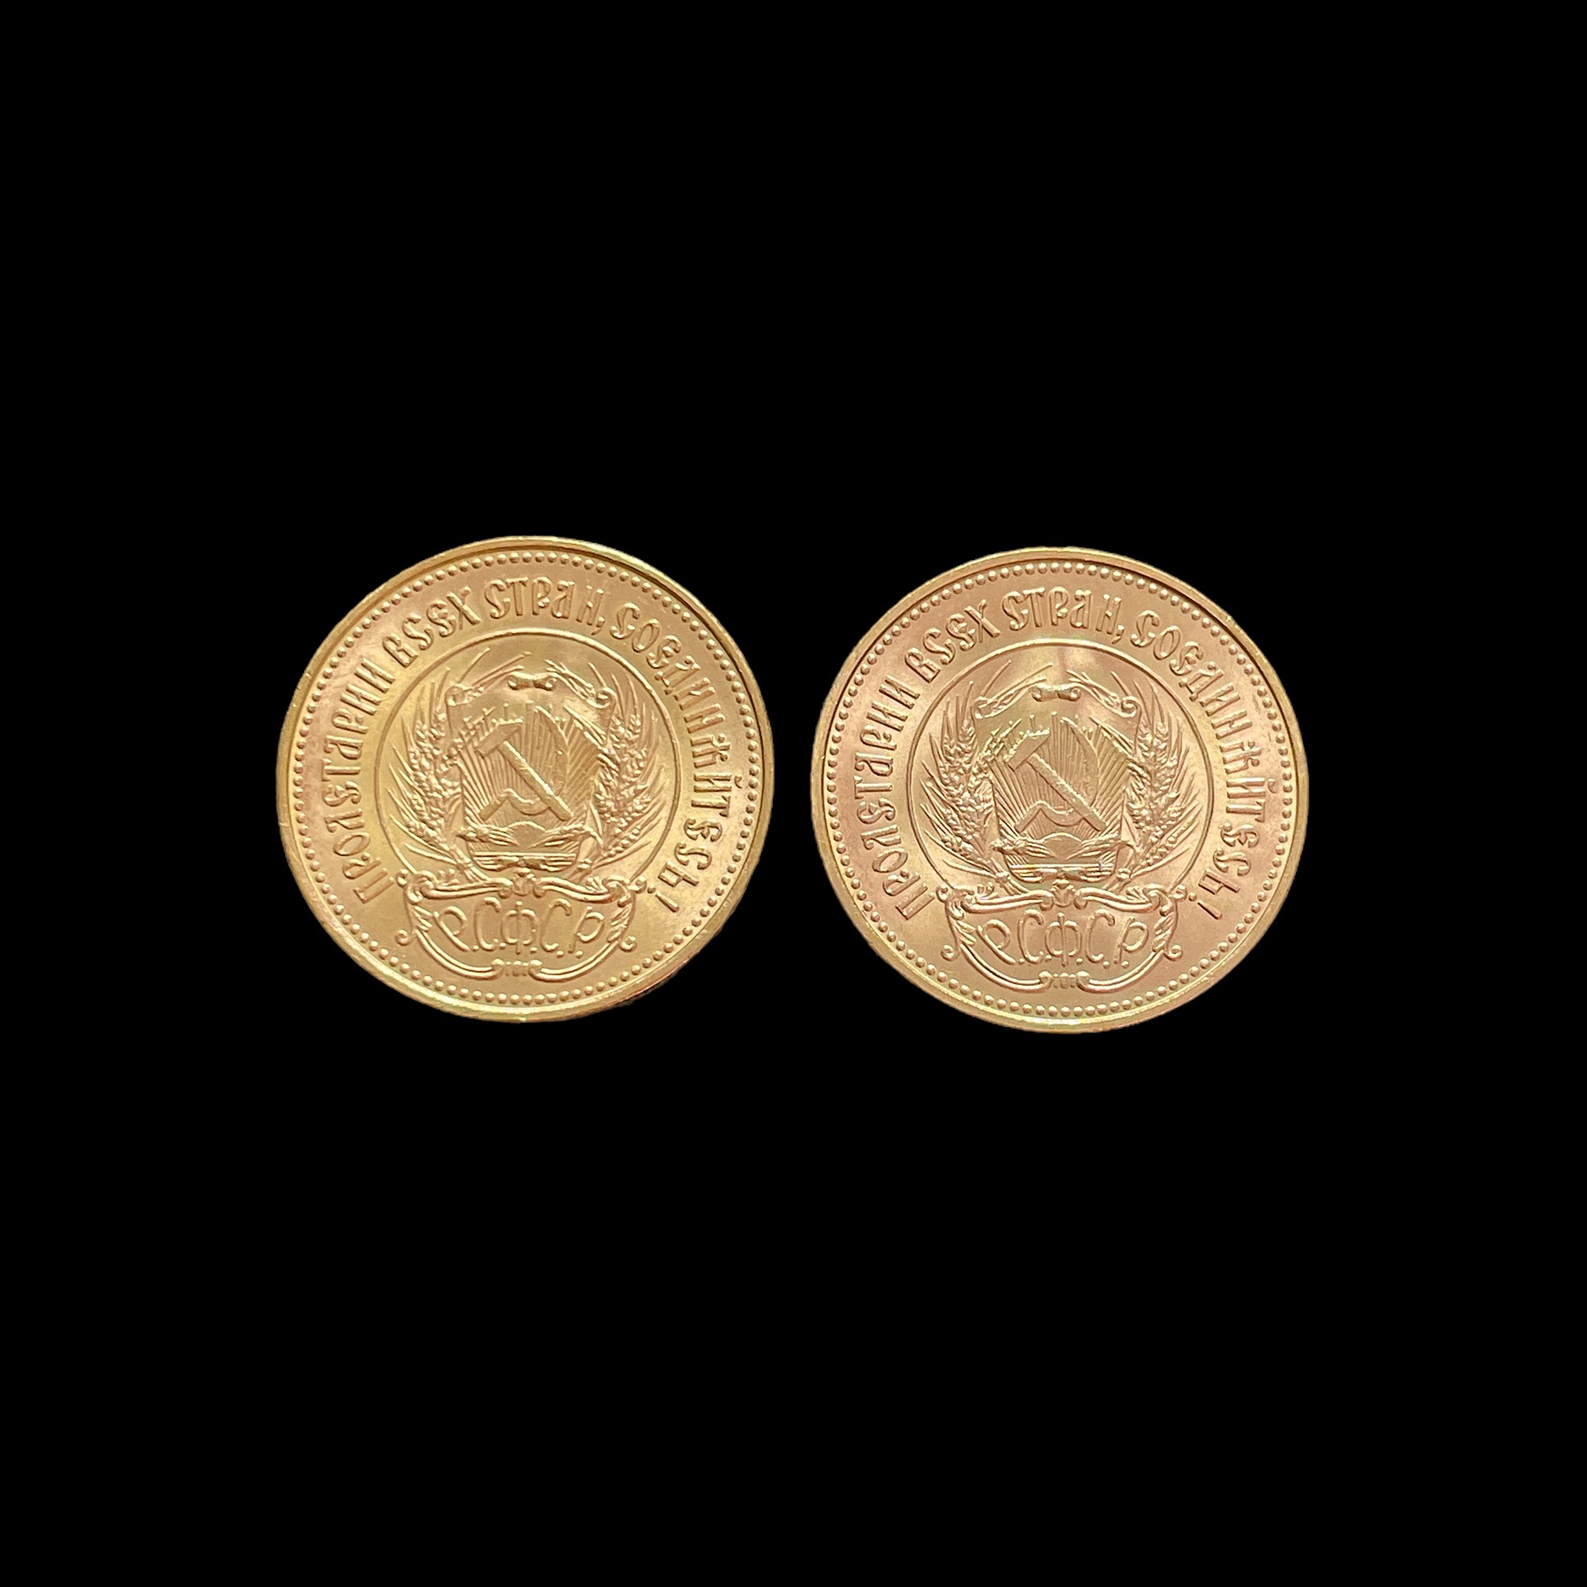 2 Goldmünzen - Image 2 of 2